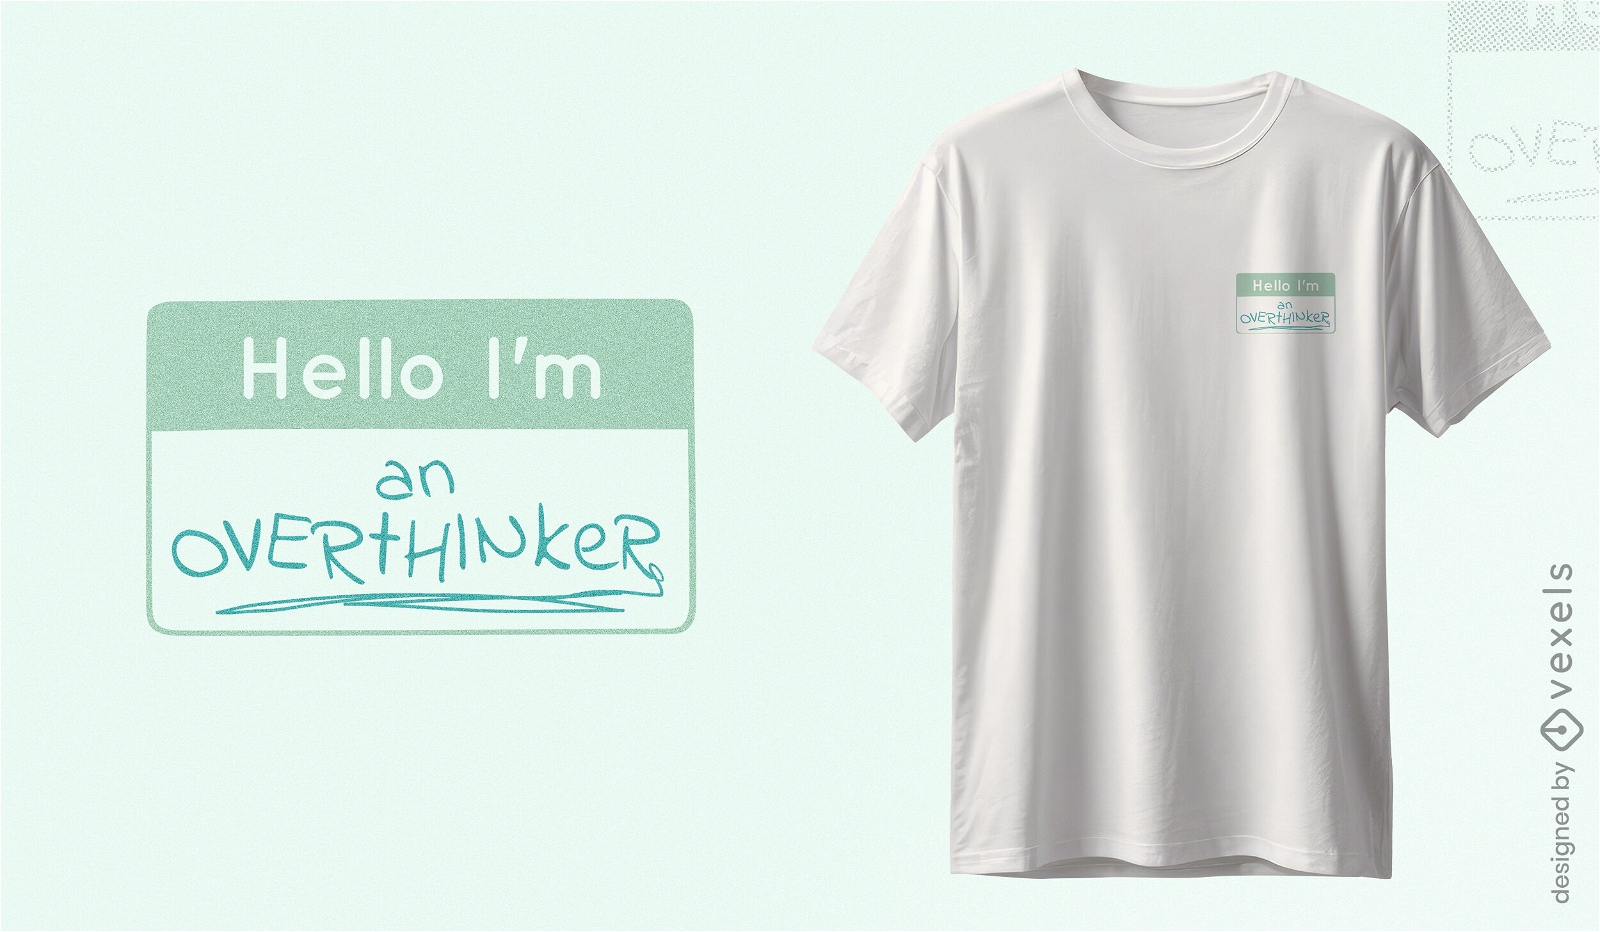 Overthinker name tag t-shirt design